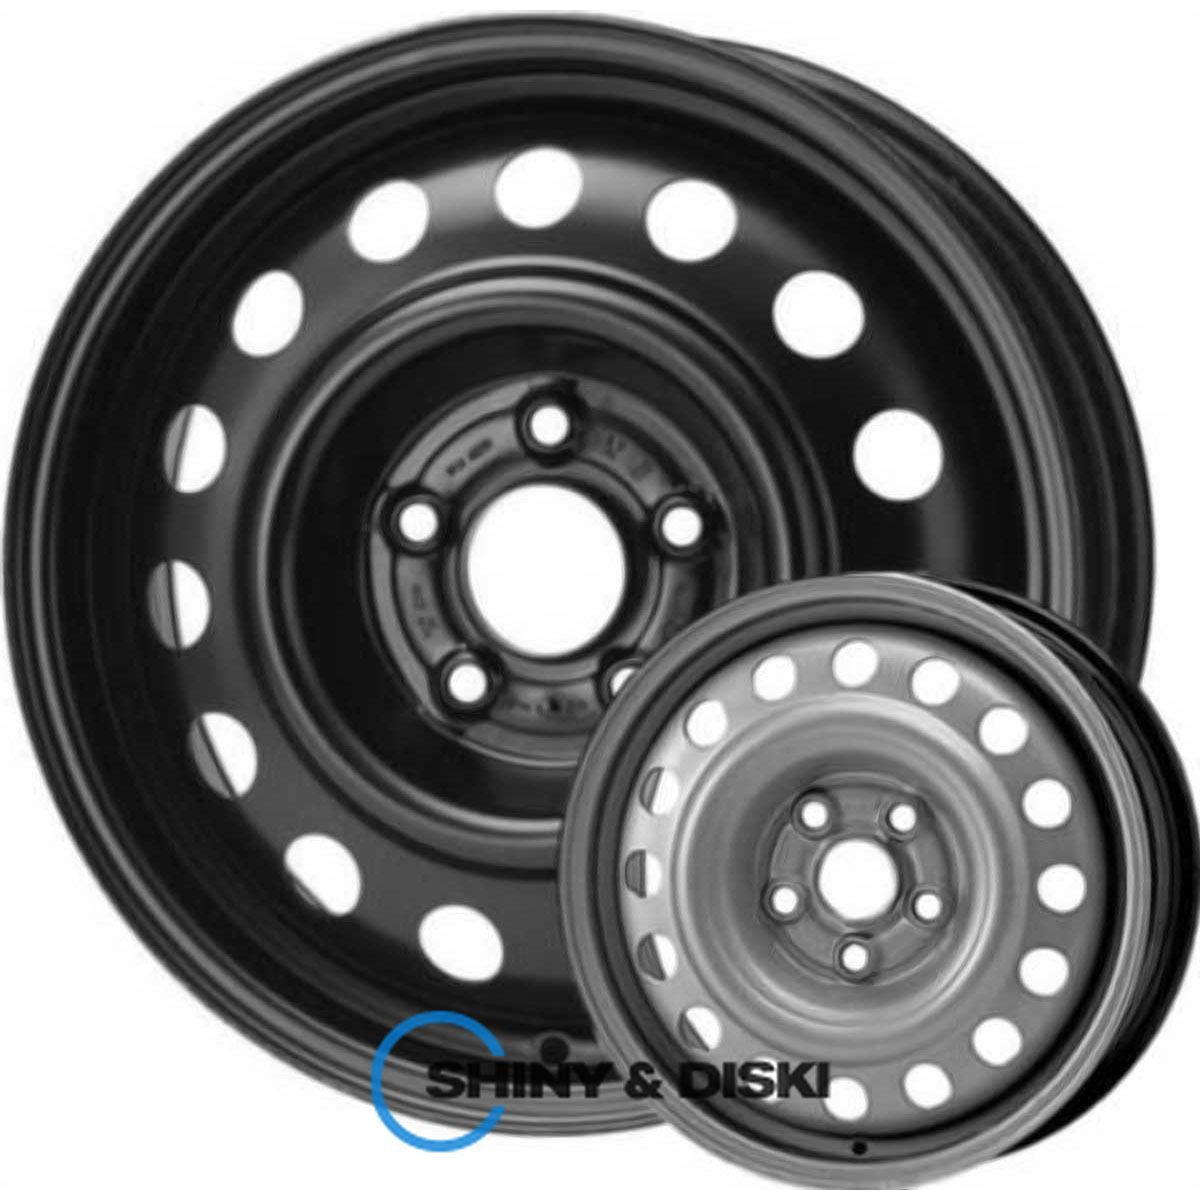 steel wheels kap b r17 w6.5 pcd5x114.3 et45 dia60.1